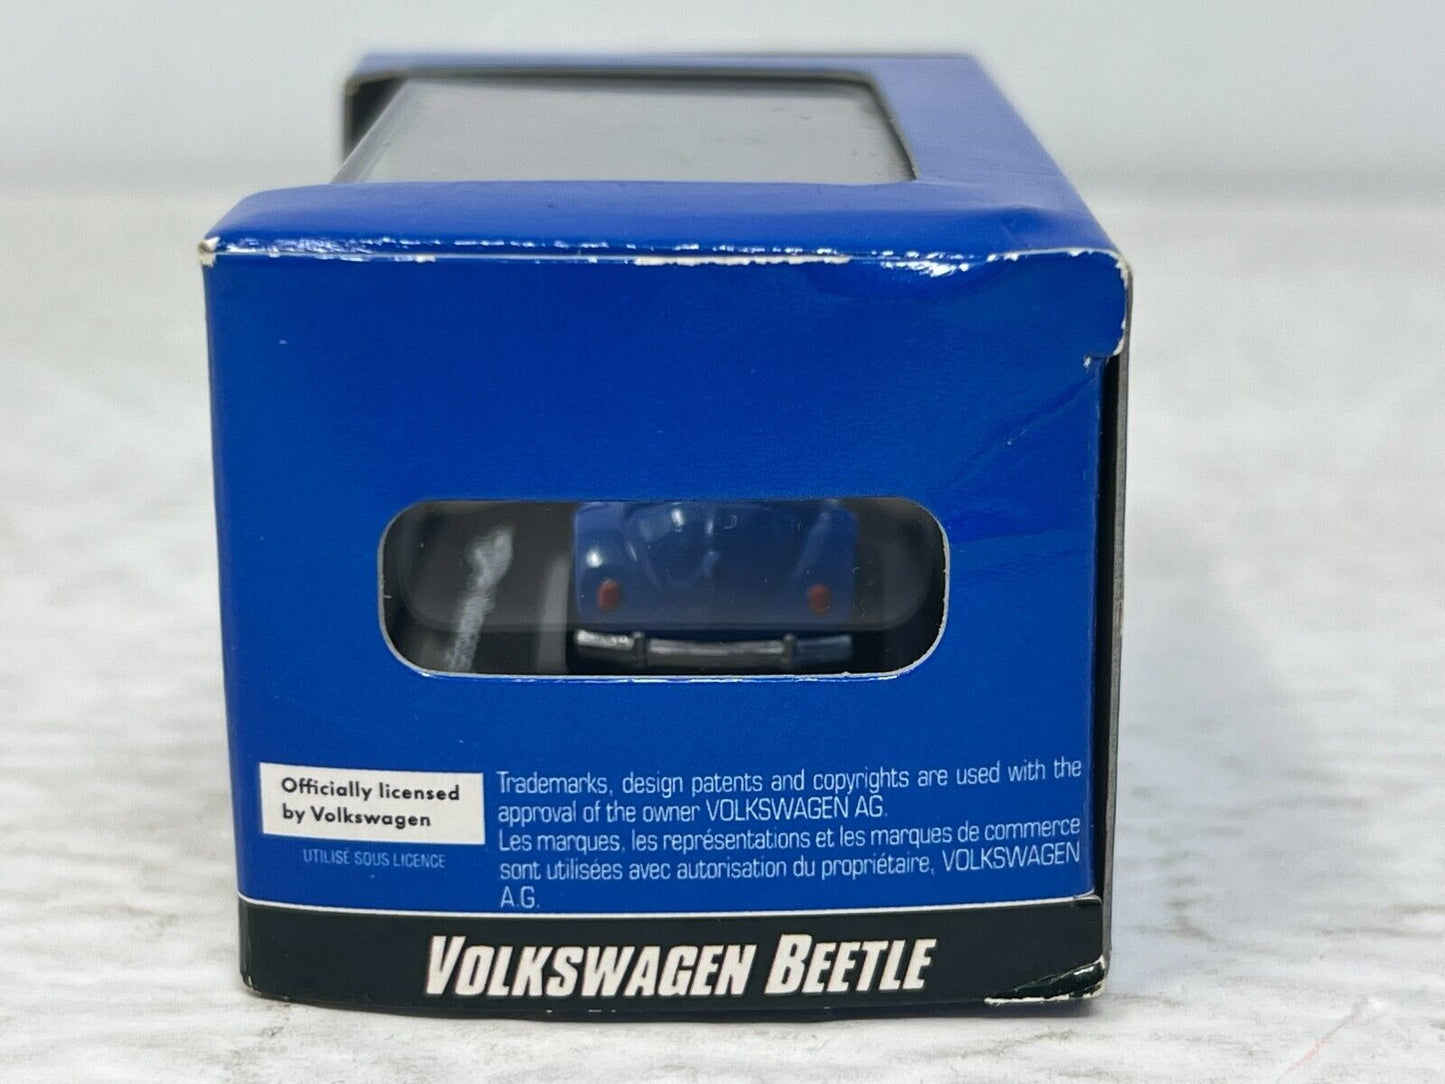 Hot Wheels Volkswagen Beetle with Display Case 1:87 Diecast